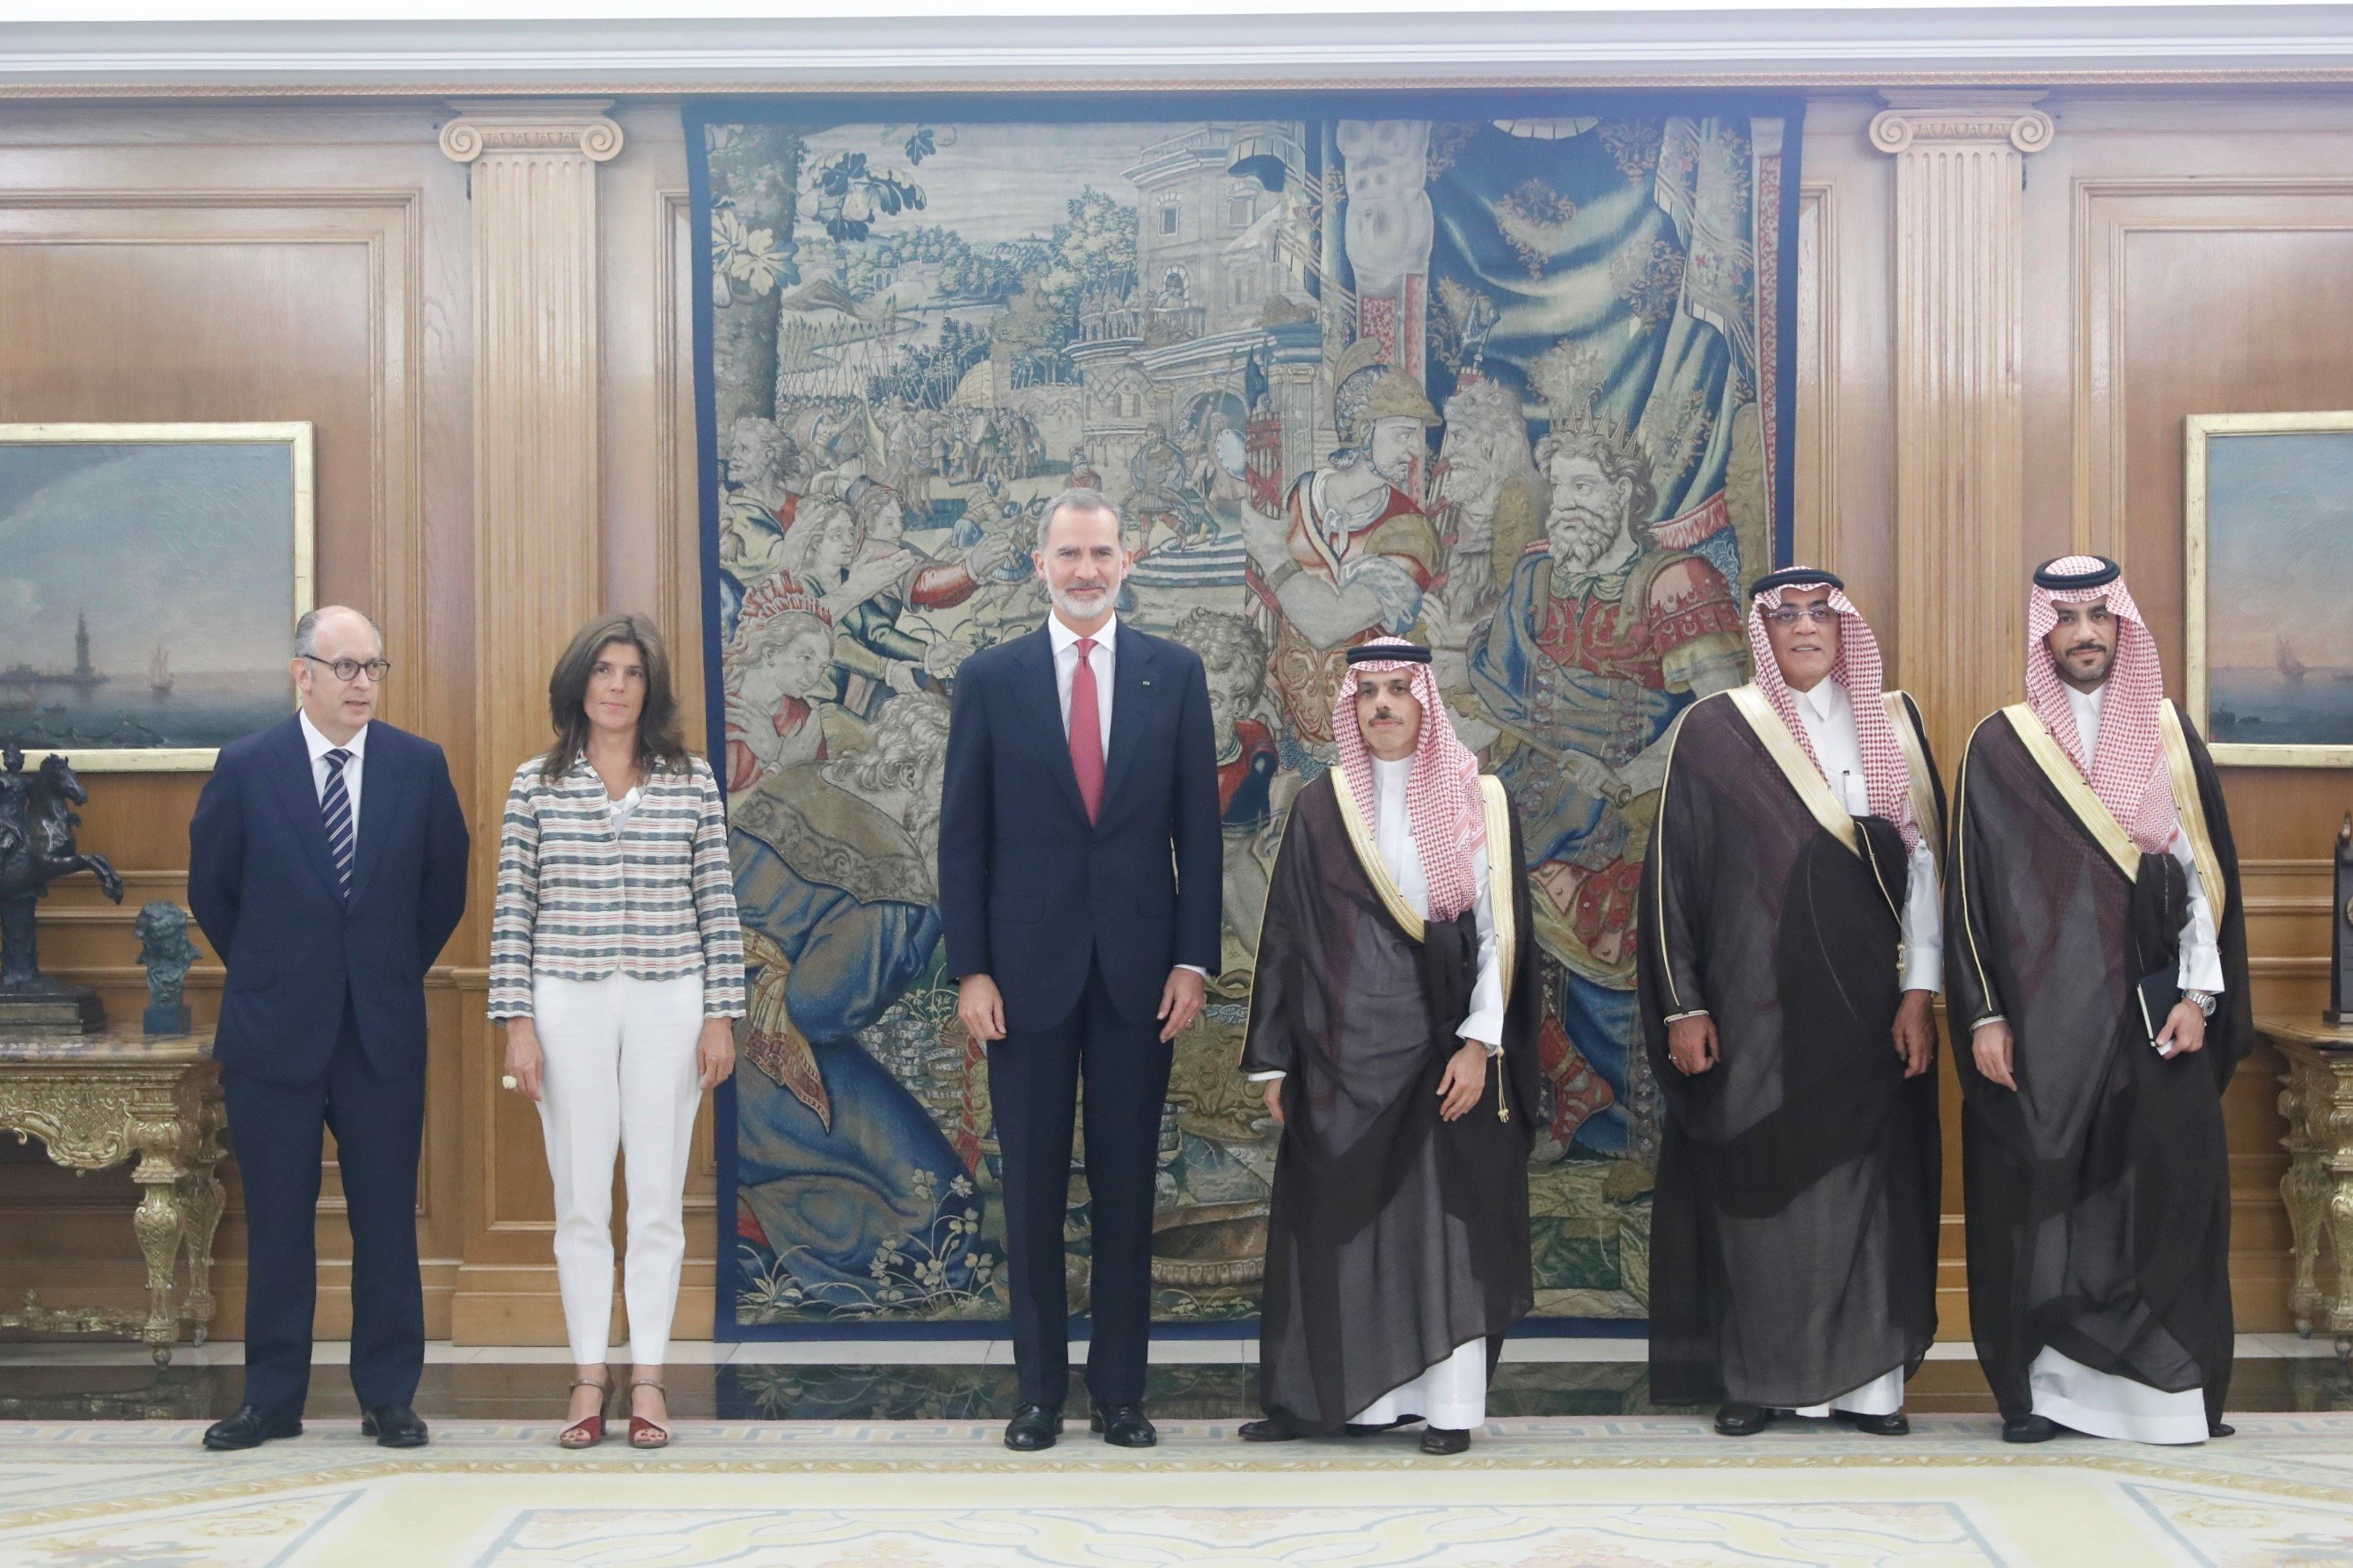 El ministre d'Afers Exteriors saudita visita Espanya per explorar noves col·laboracions